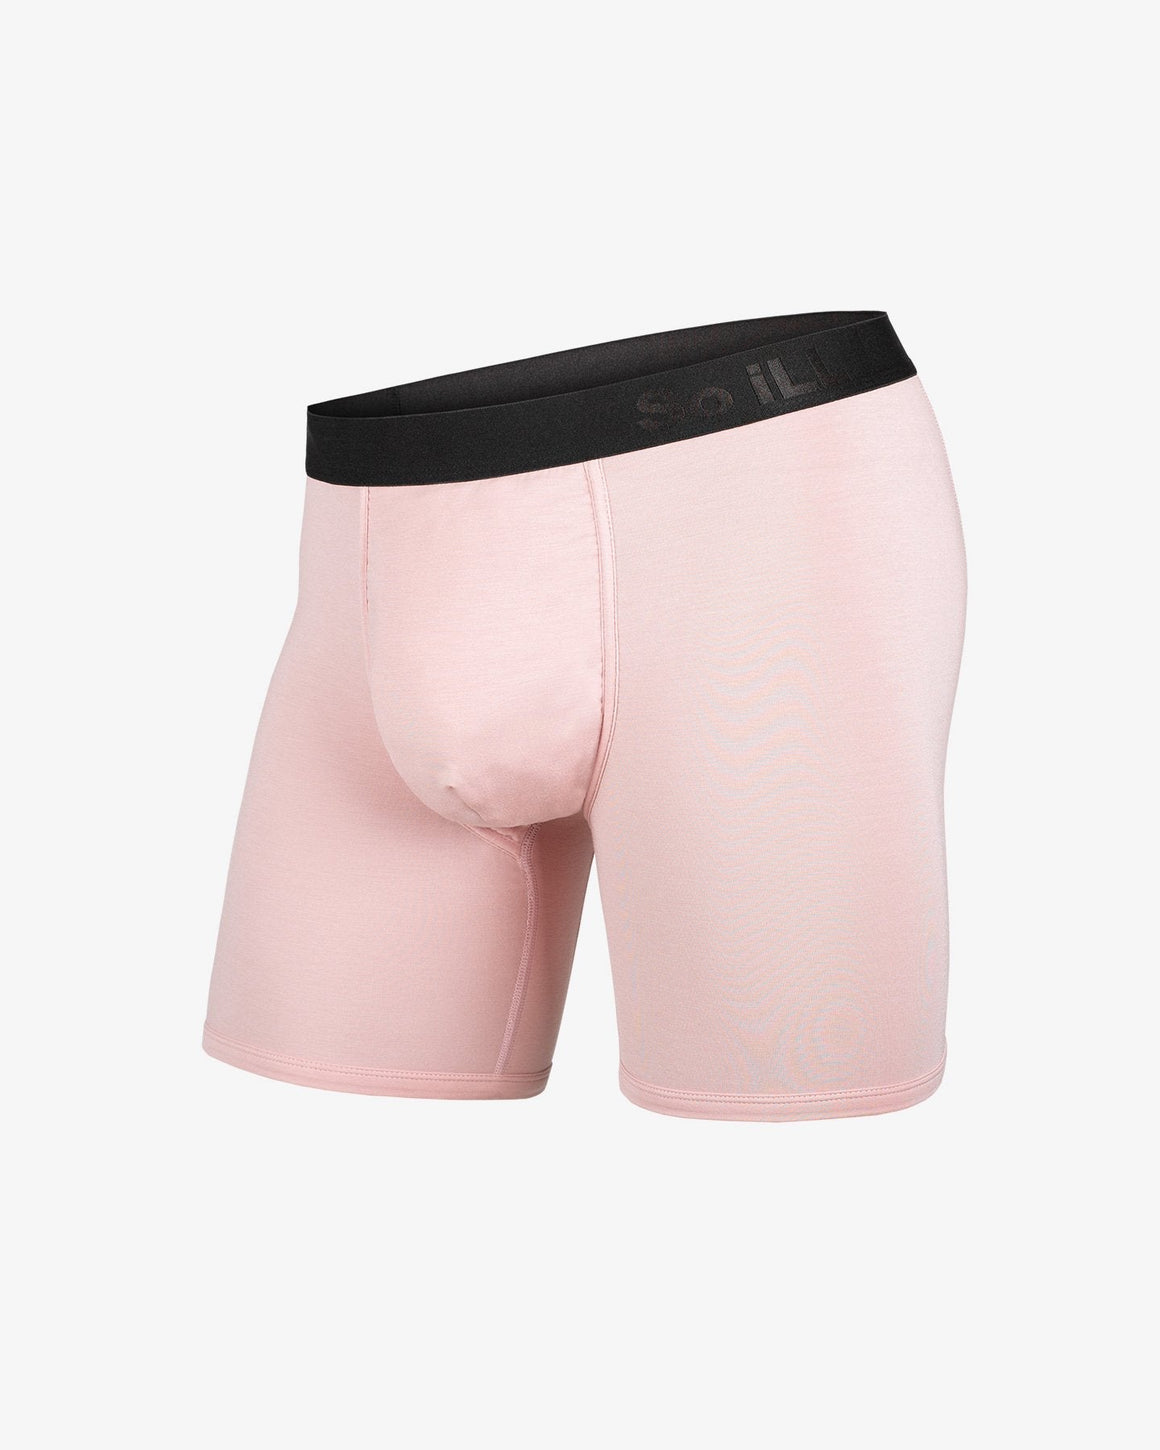 BN3TH Underwear (The Most Comfortable Undergarment Wear)